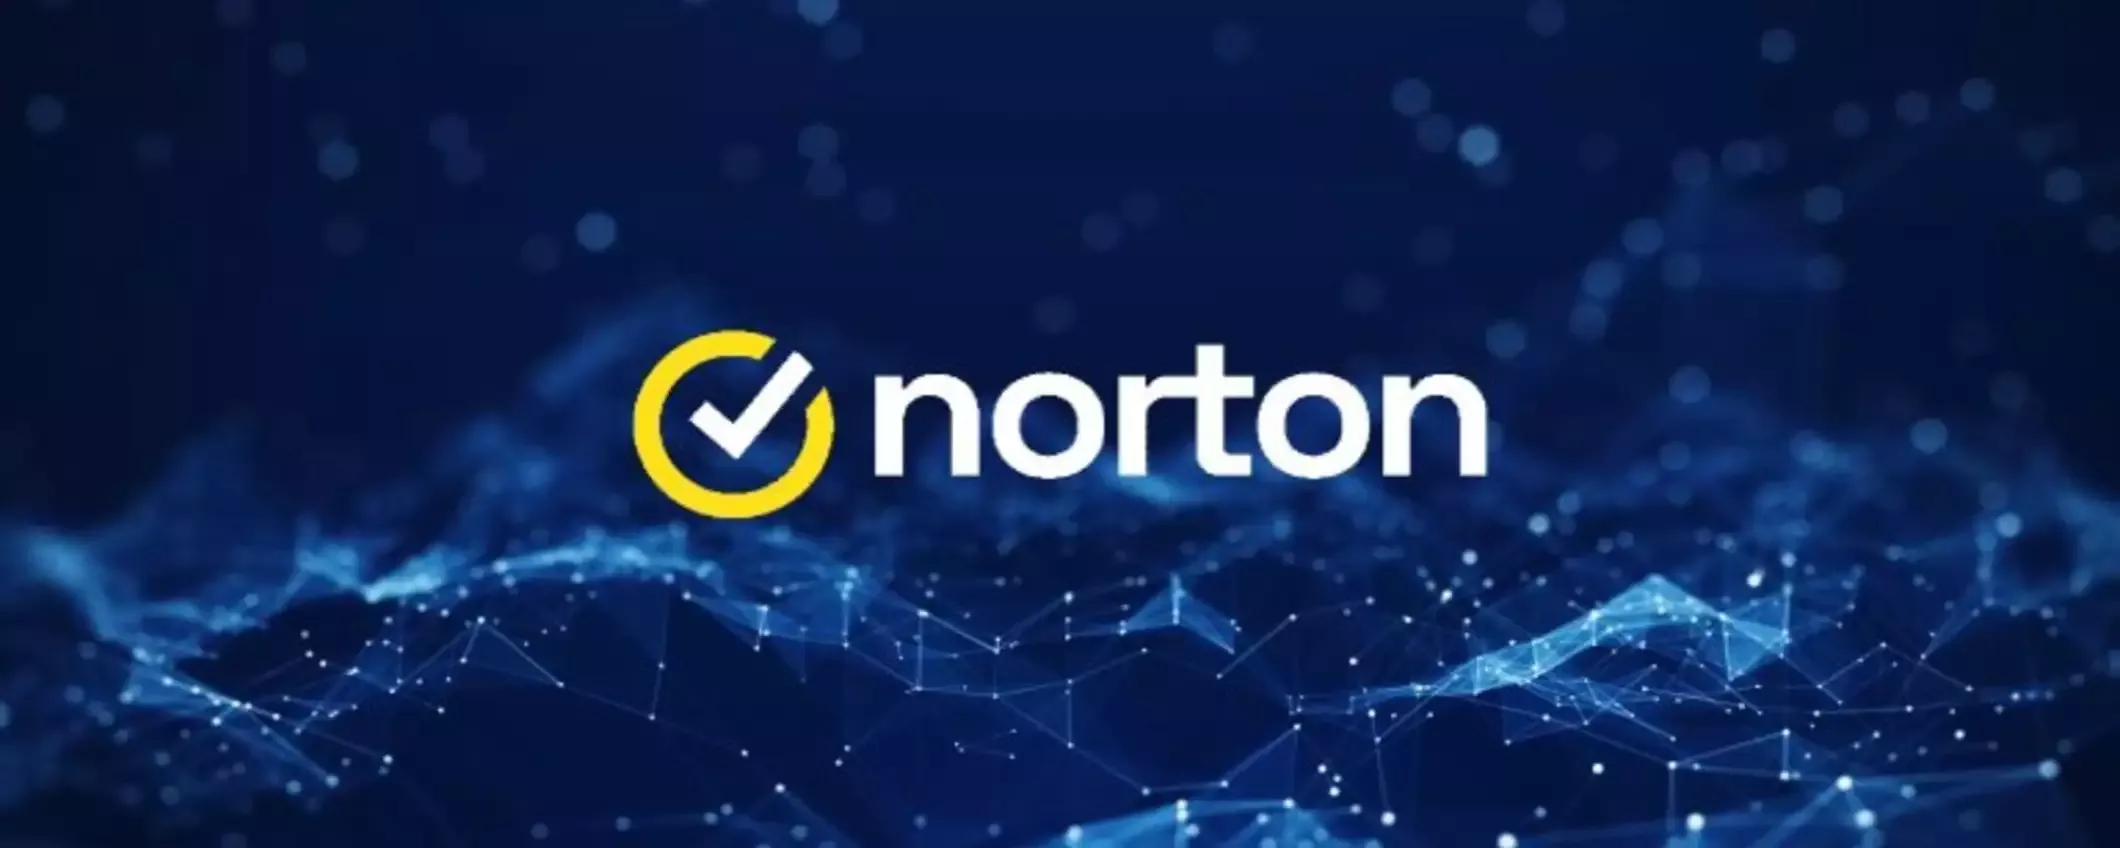 Sconto del 66% su Norton 360 Deluxe: l’offerta secca di Norton